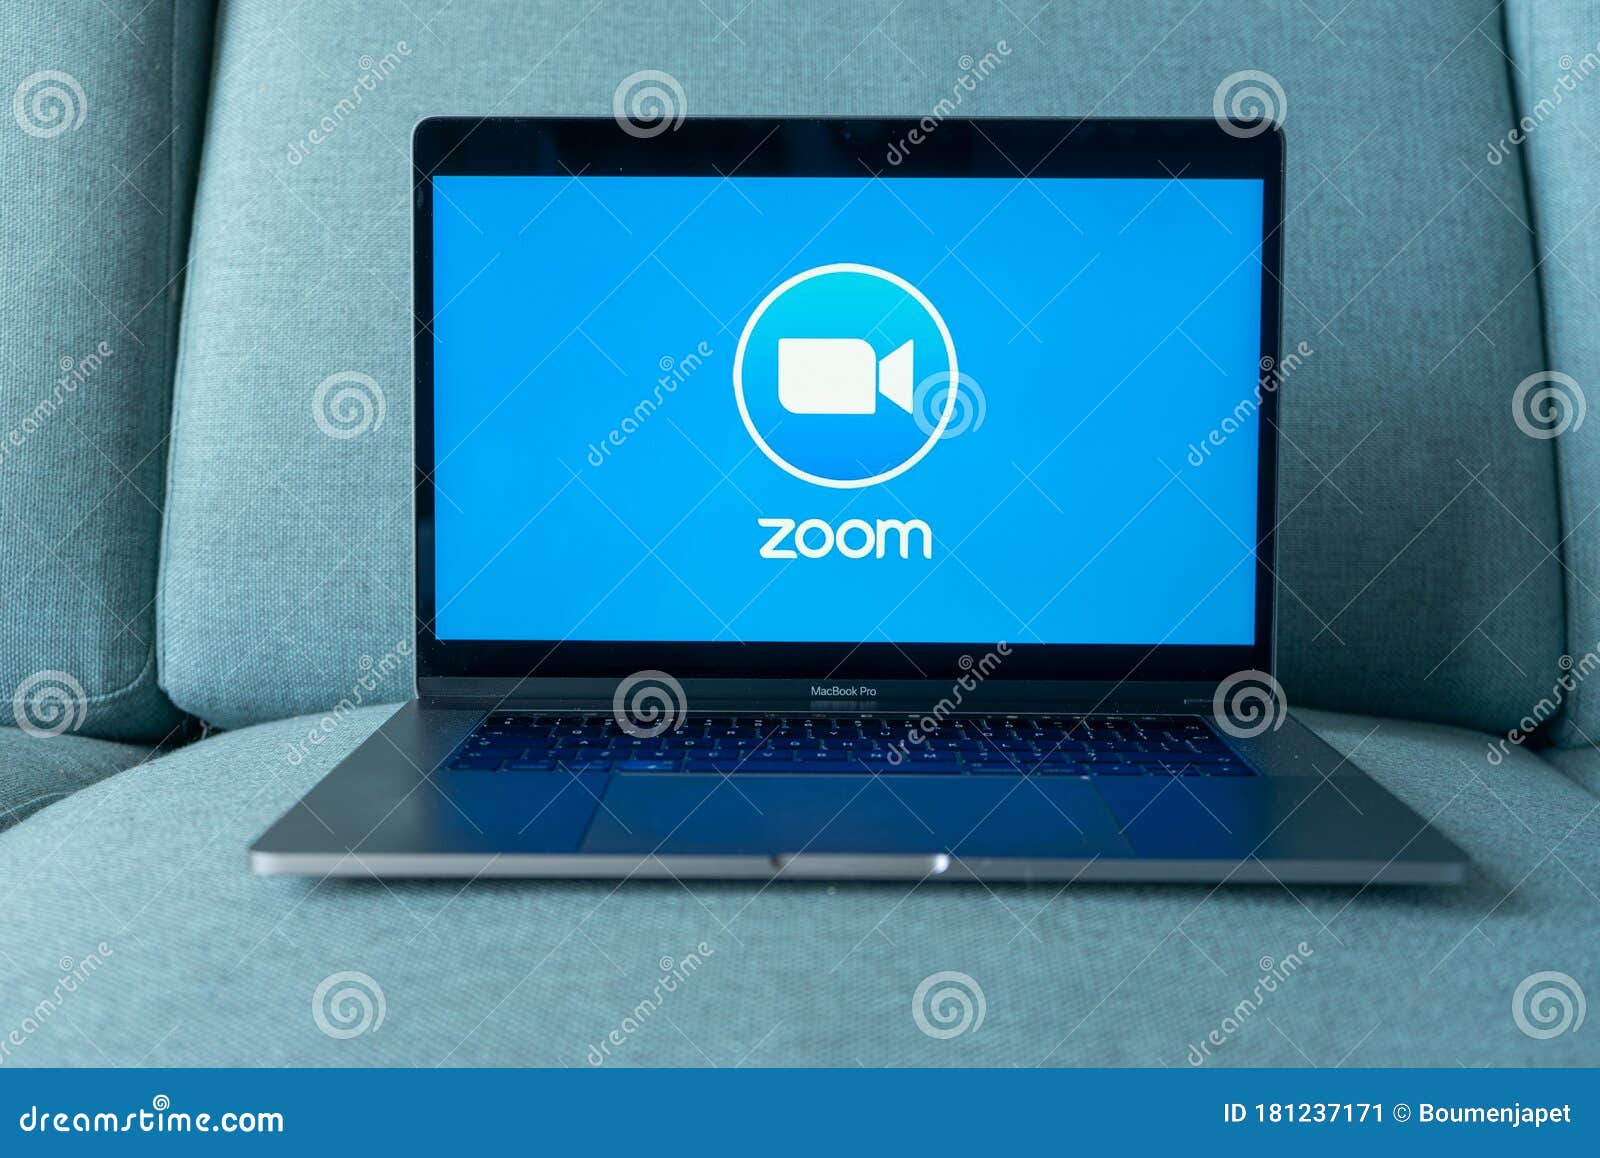 Laptop Showing Zoom Cloud Meetings App Logo